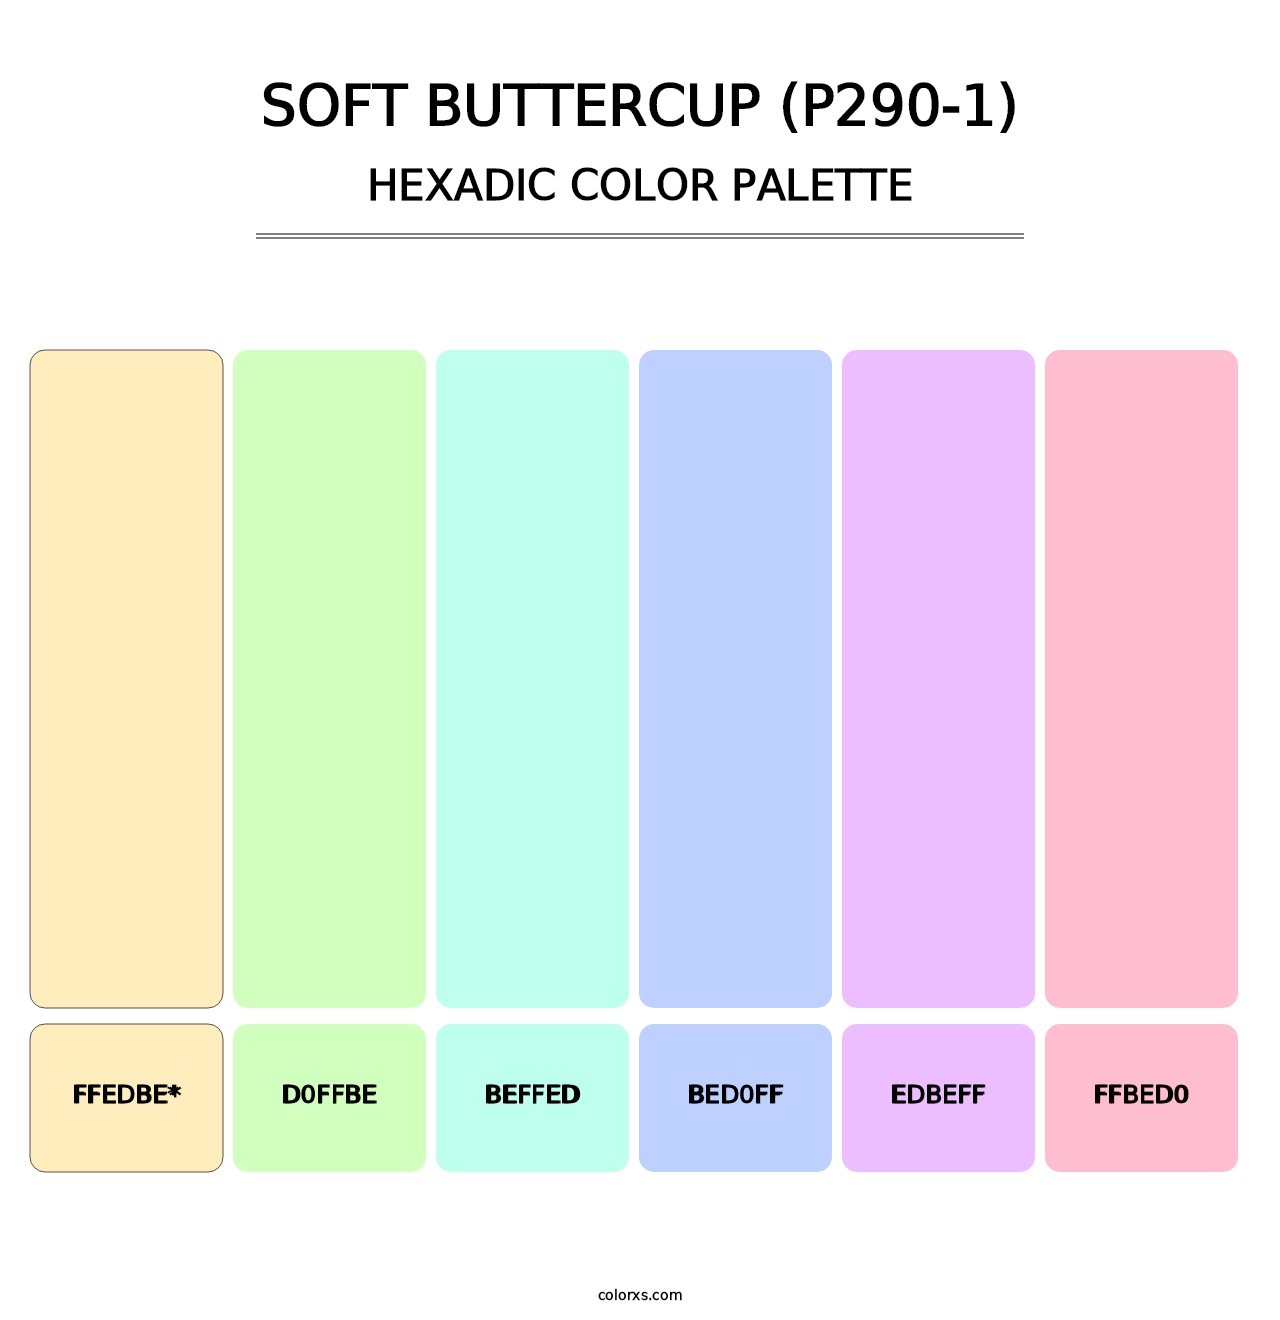 Soft Buttercup (P290-1) - Hexadic Color Palette